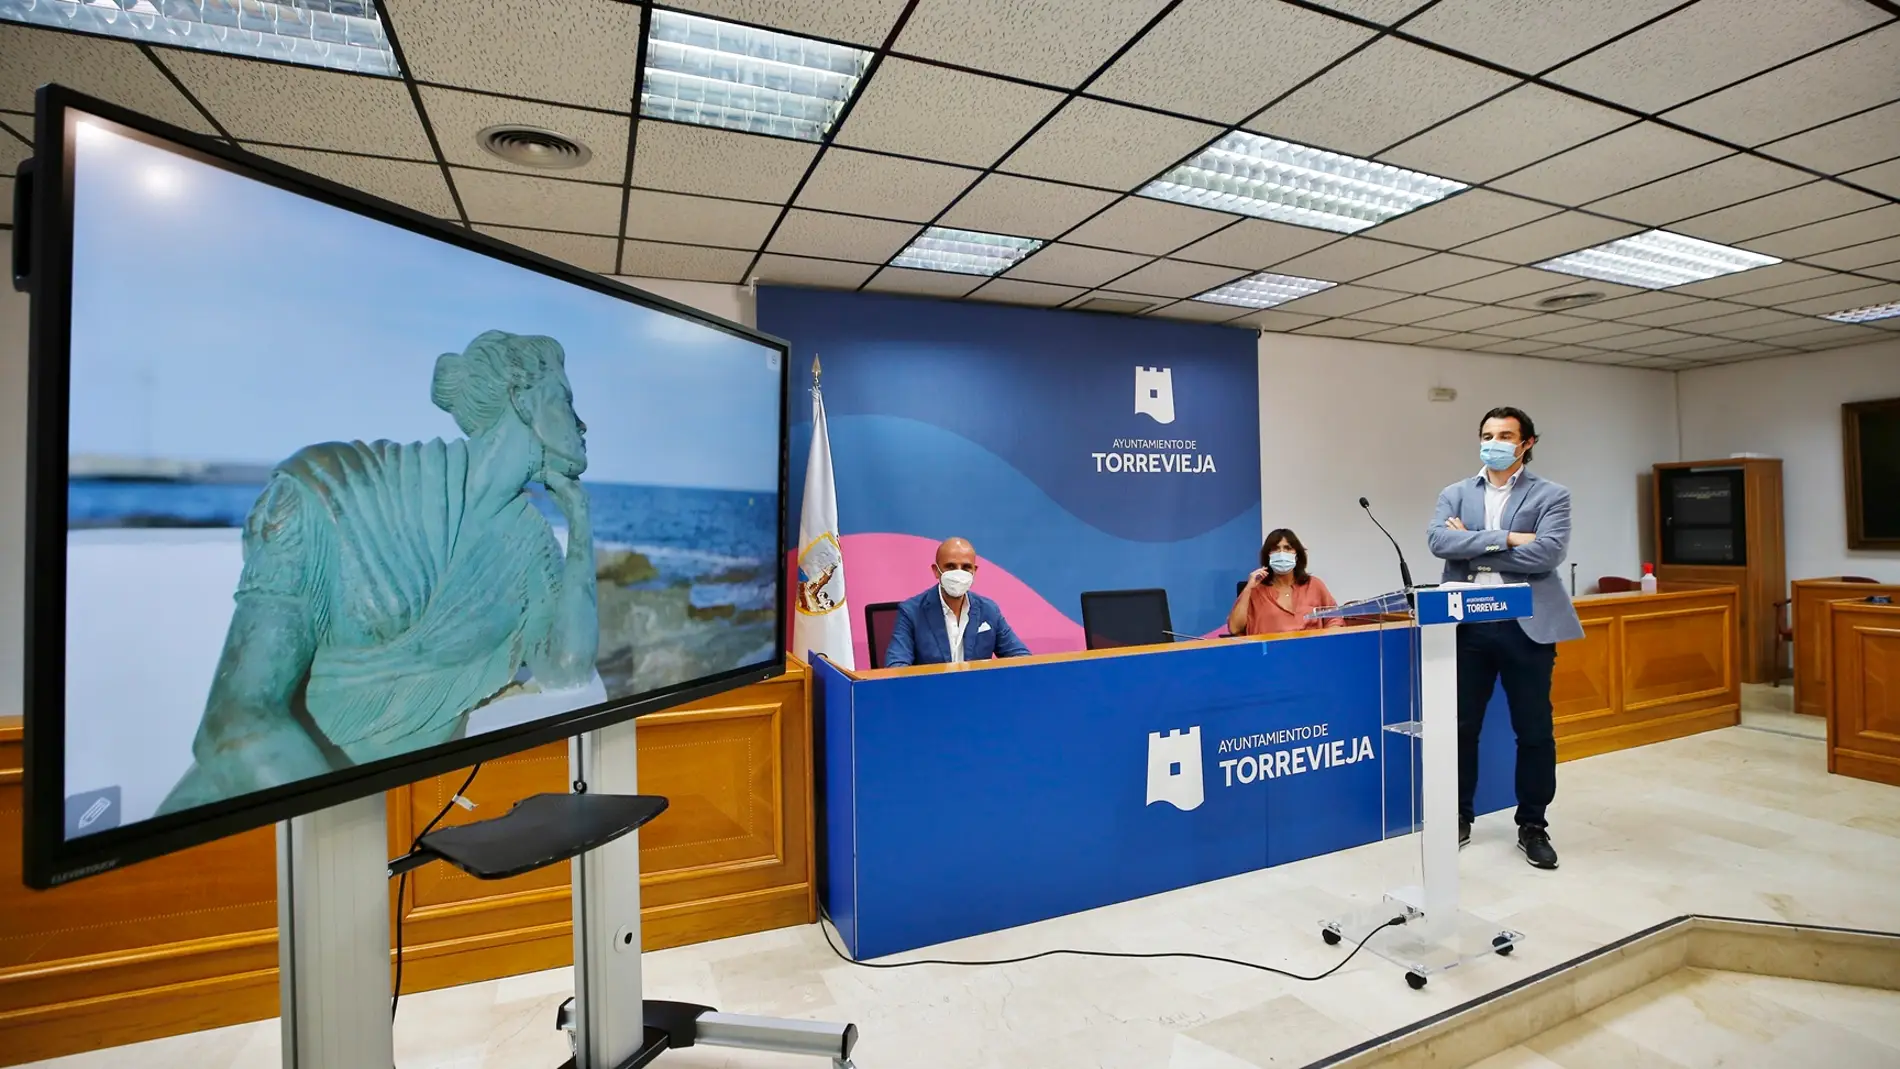 El alcalde ha destacado que con esta nueva imagen se ha intentado “entrar en el corazón de Torrevieja”, moderna, contemporánea y emprendedora 